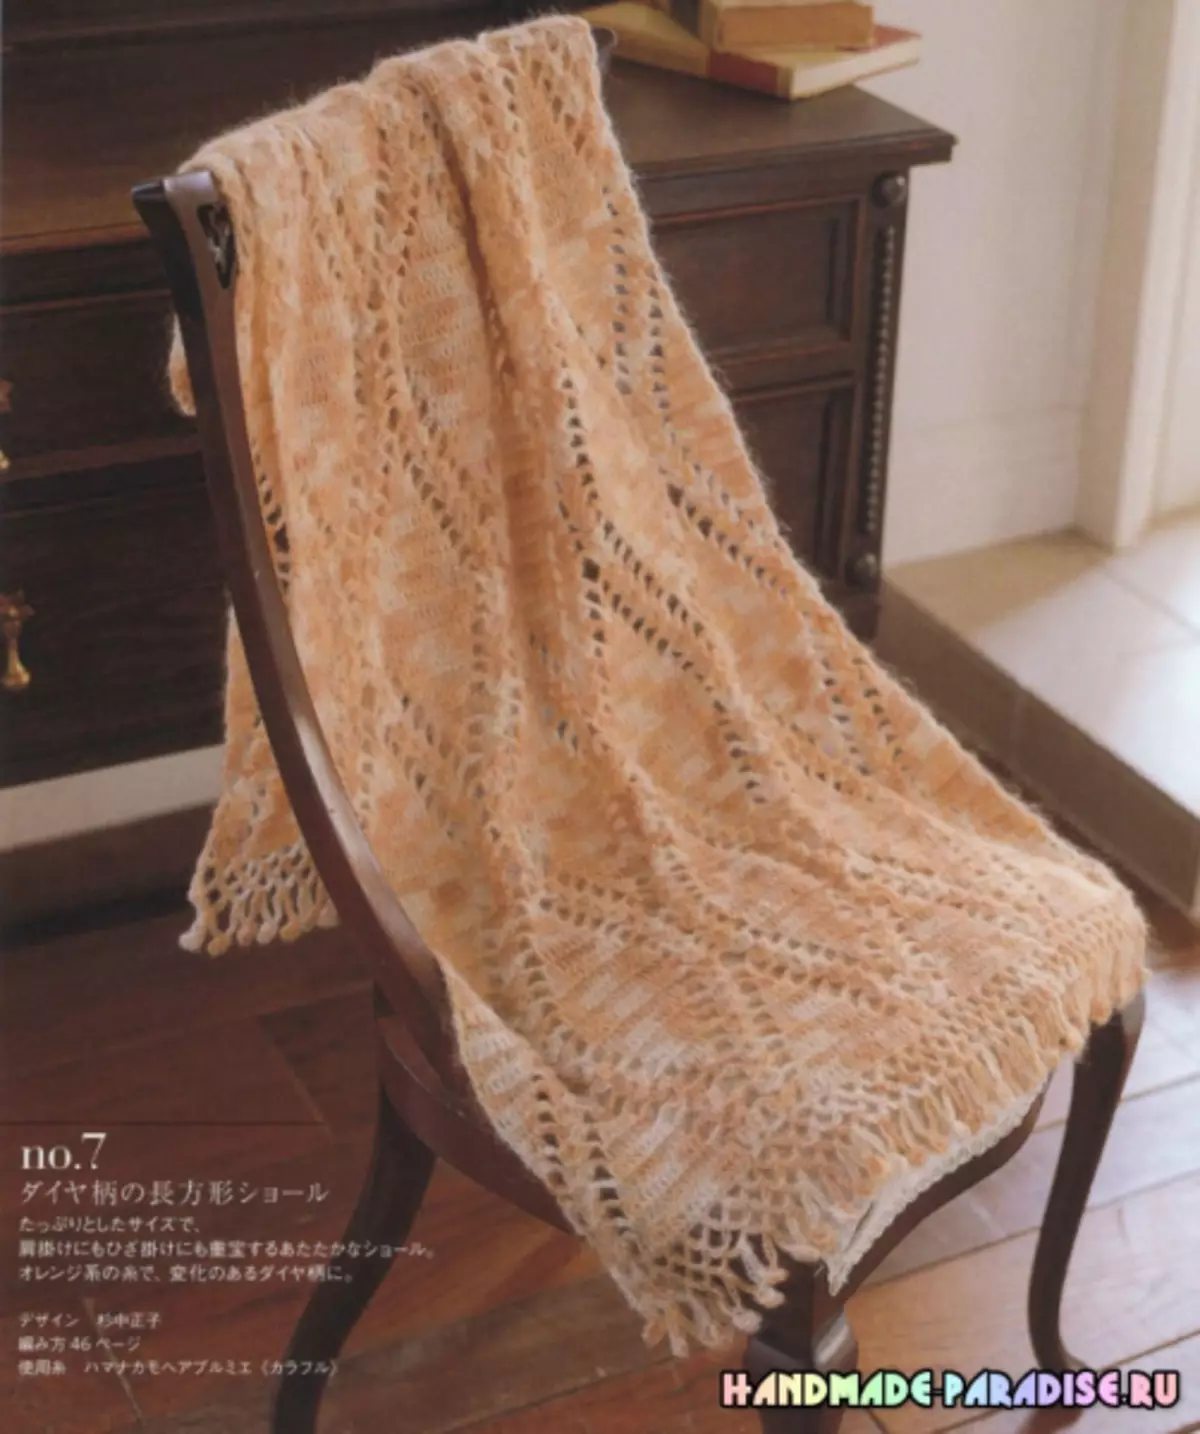 Stylový pletení háčkování. Japonský časopis se schématy